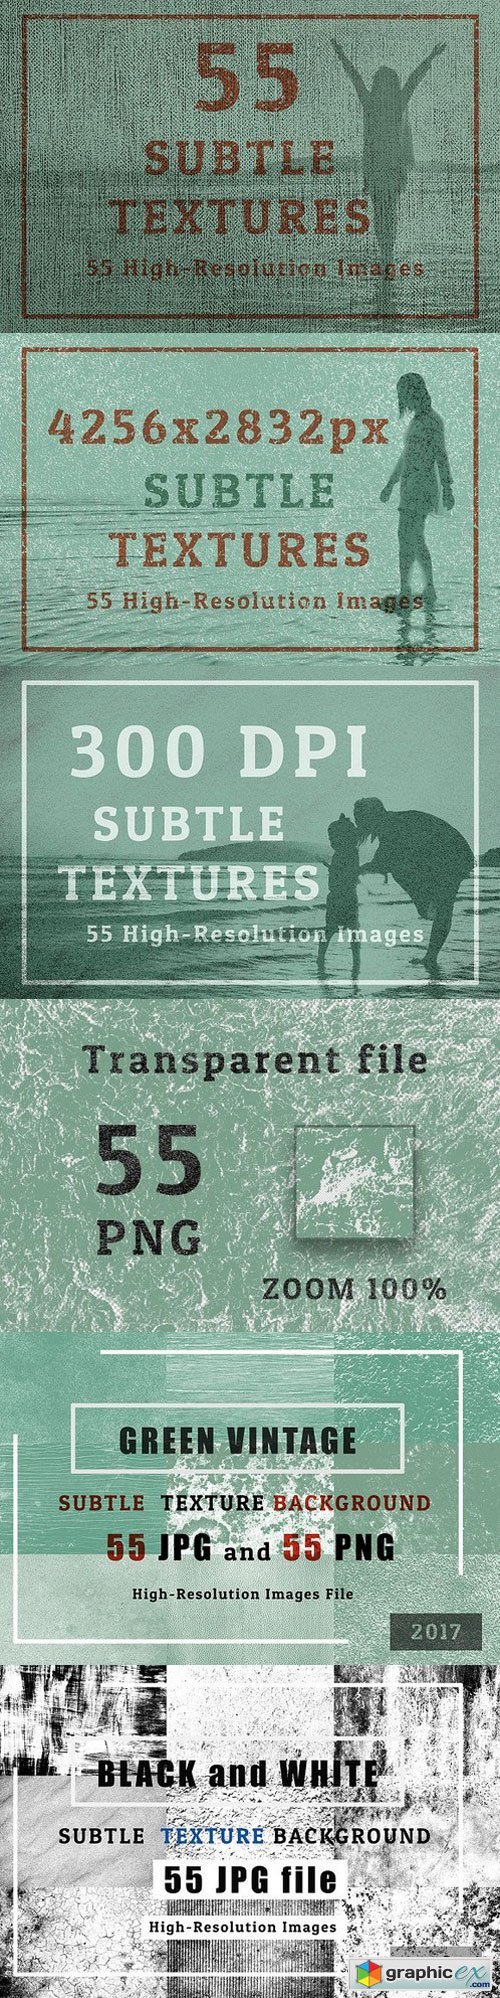 55 Subtle Texture Background Set 1